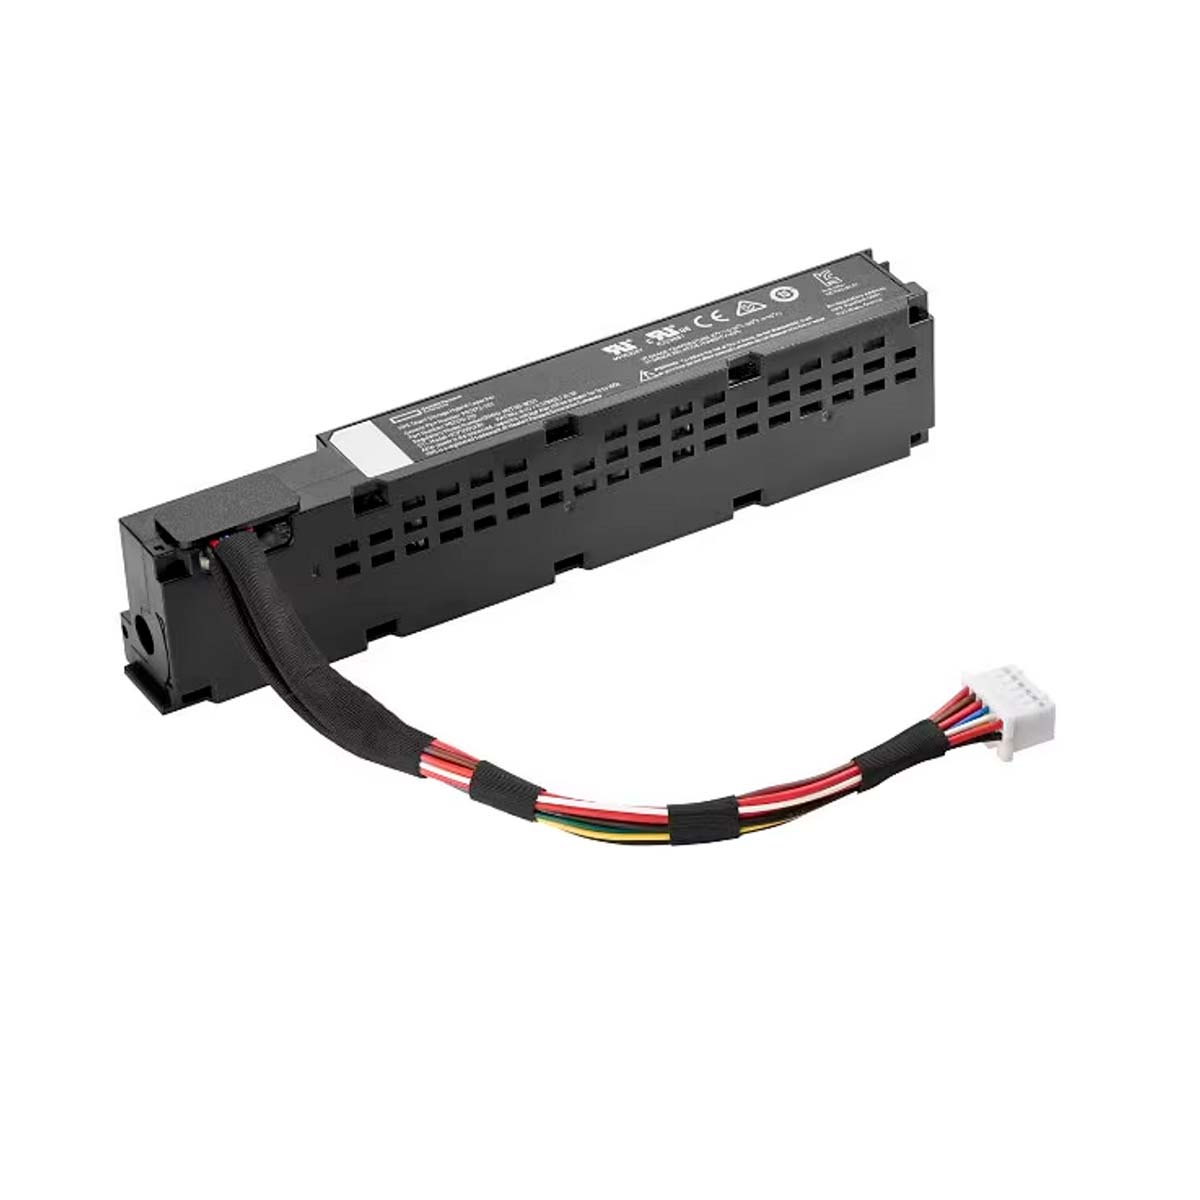 Condensador híbrido HPE Smart Storage con kit de cables de 145 mm P02377-B21